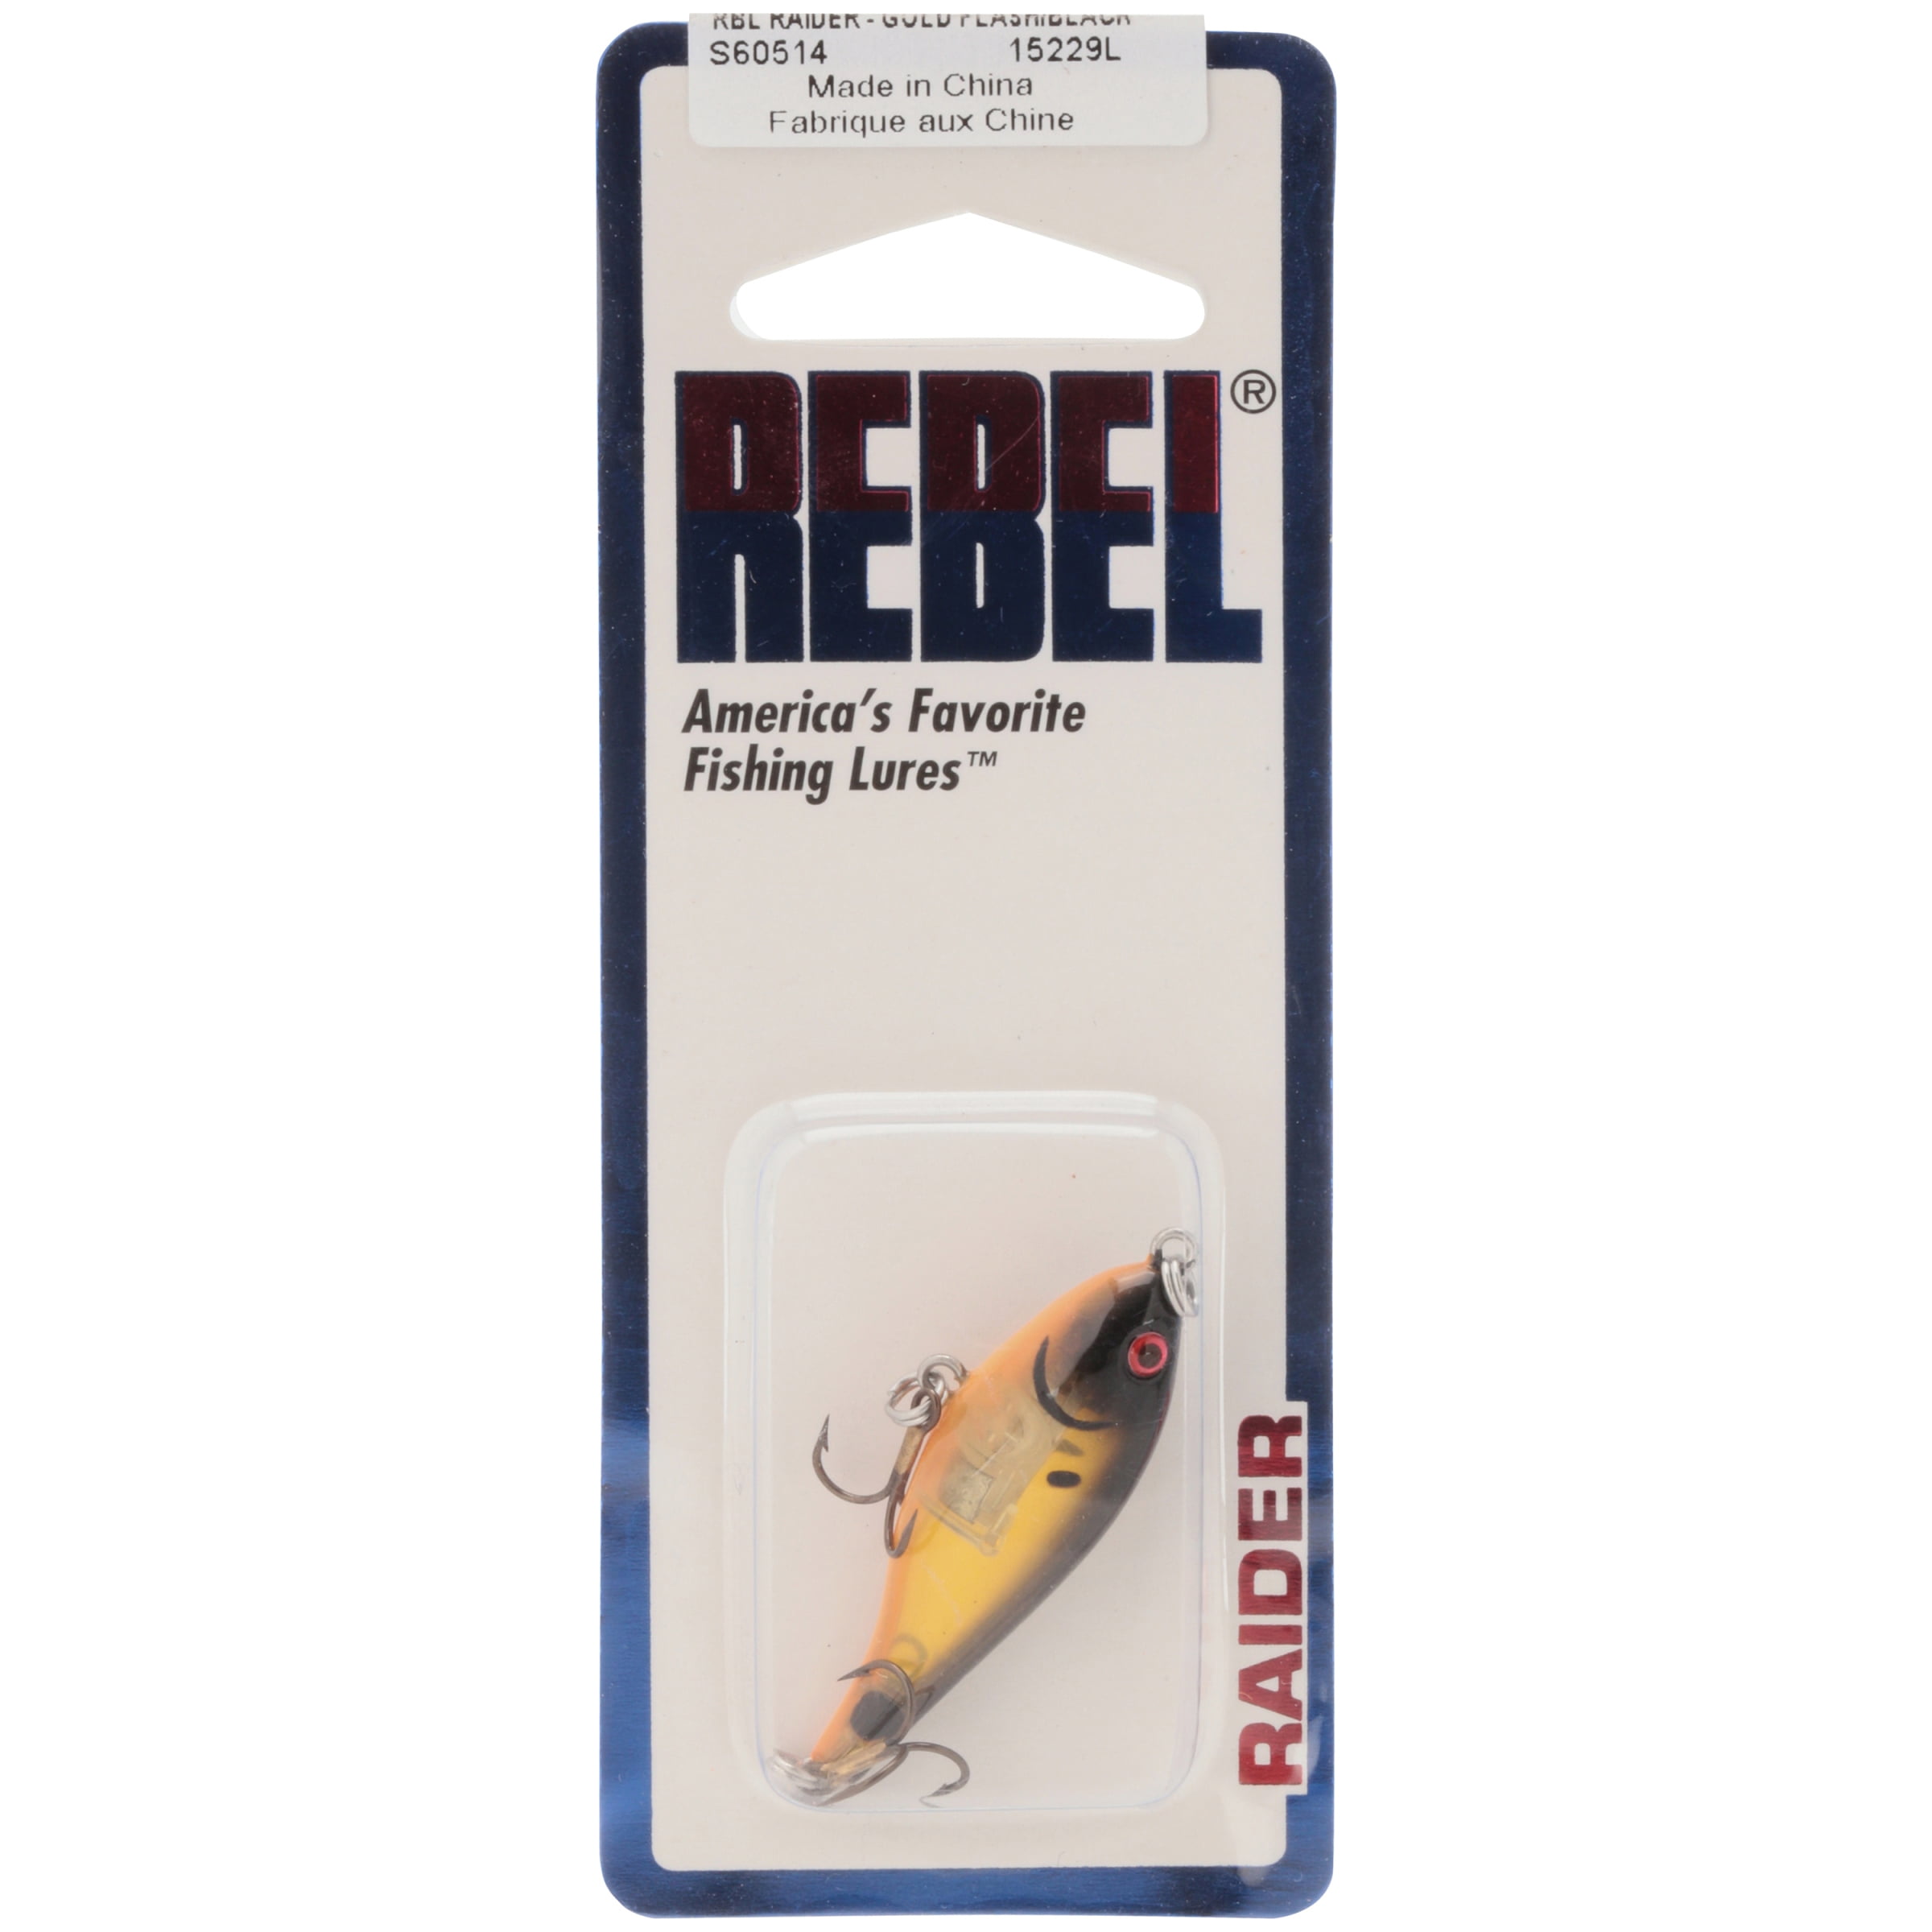 Rebel Raider Fishing Lure Hard bait Gold Flash Black 1 5/8 in 1/8 oz